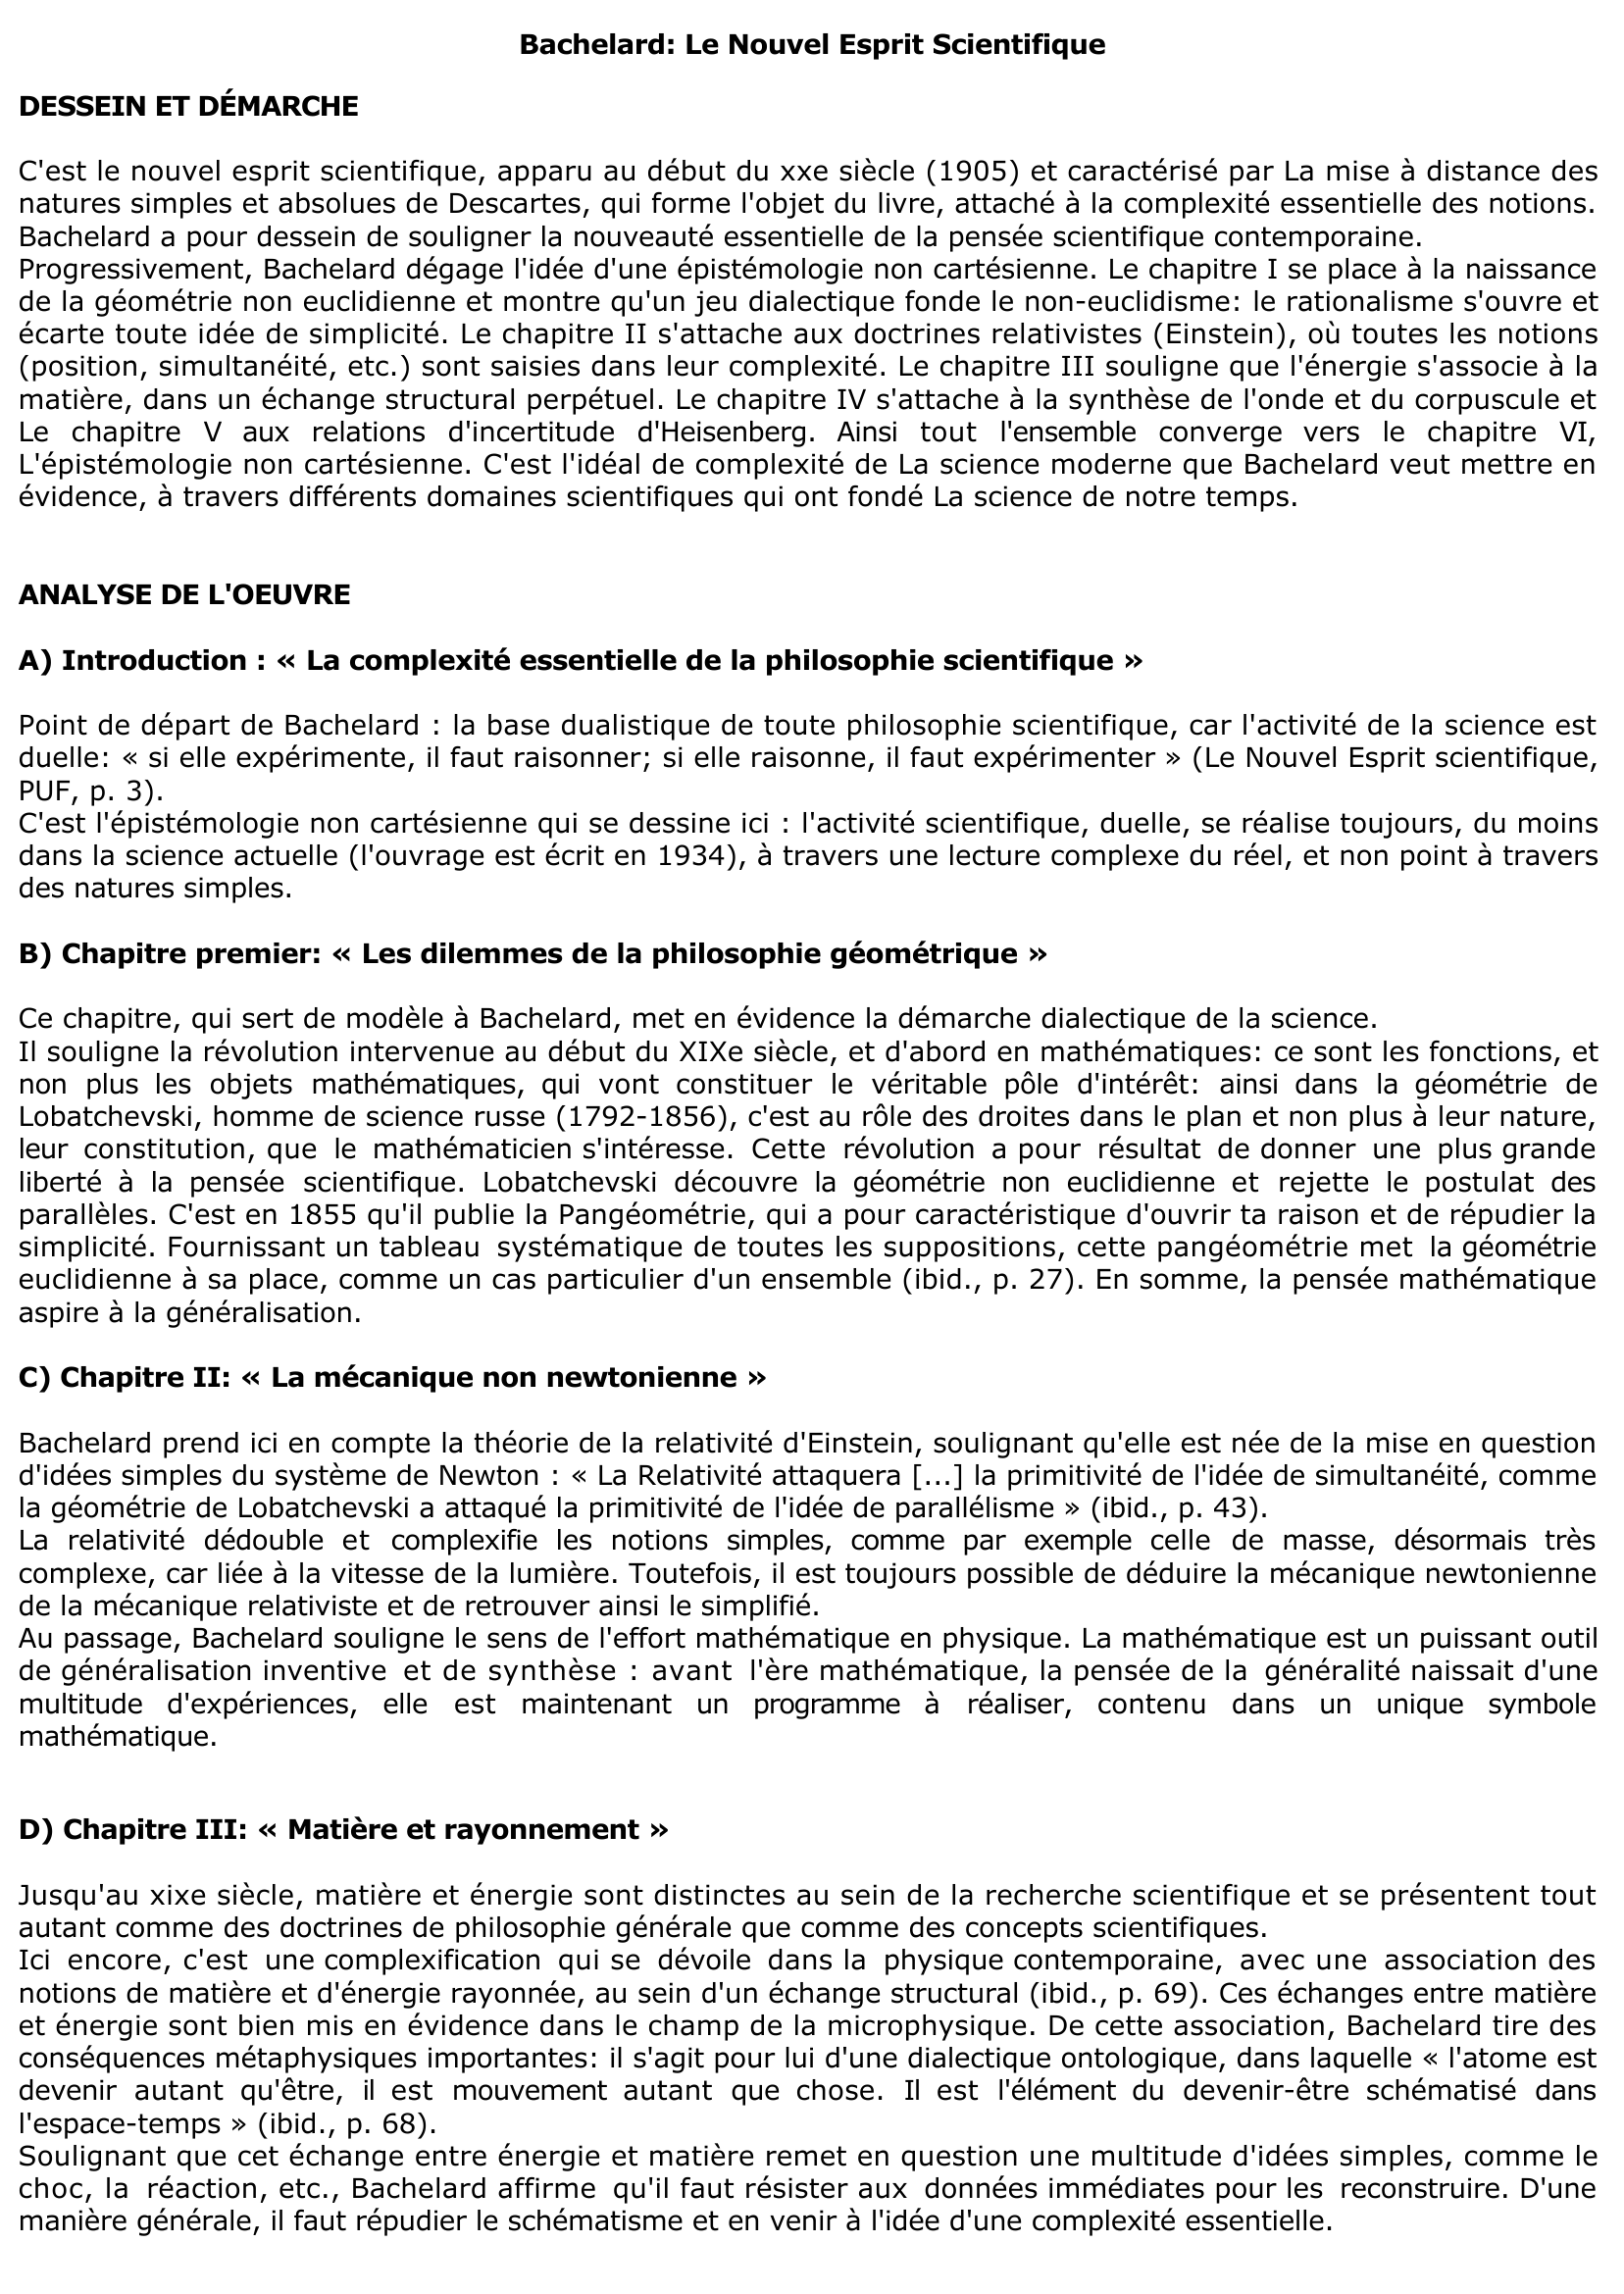 Prévisualisation du document NOUVEL ESPRIT SCIENTIFIQUE (Le) de Gaston Bachelard (résumé)